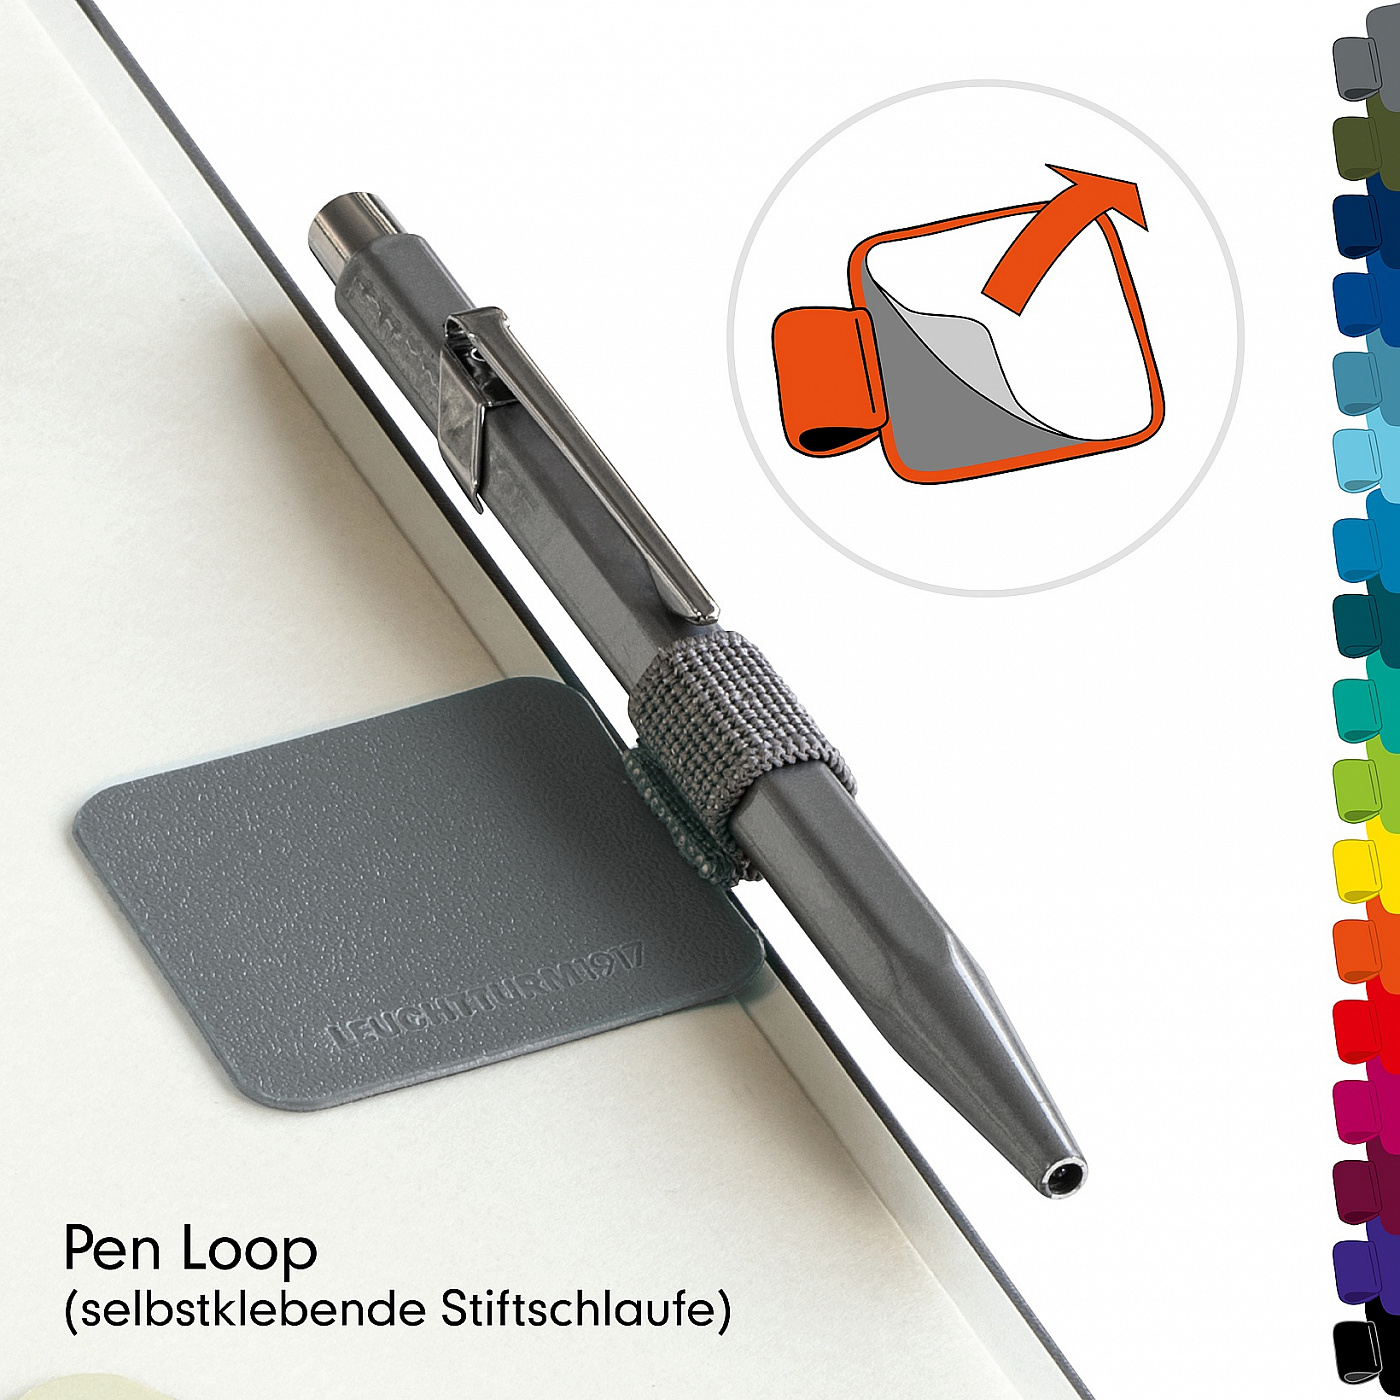 Петля самоклеящаяся Pen Loop XL для ручек Leuchtturm цвет Красный портвейн Lecht-366145 - фото 3